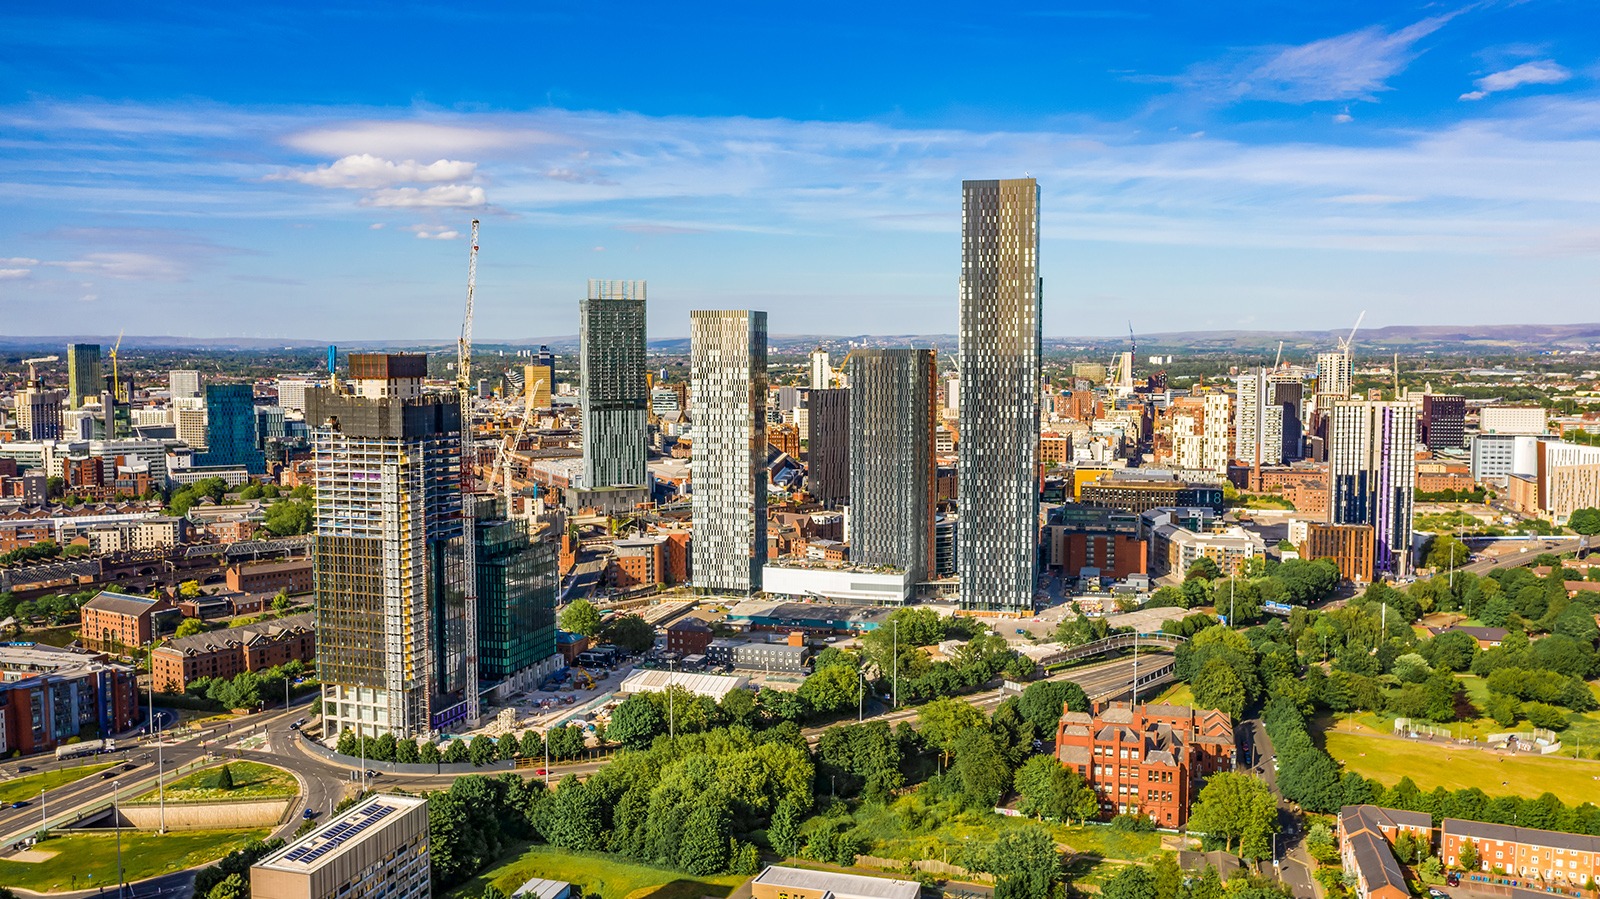 Manchester: A Rental Hotspot